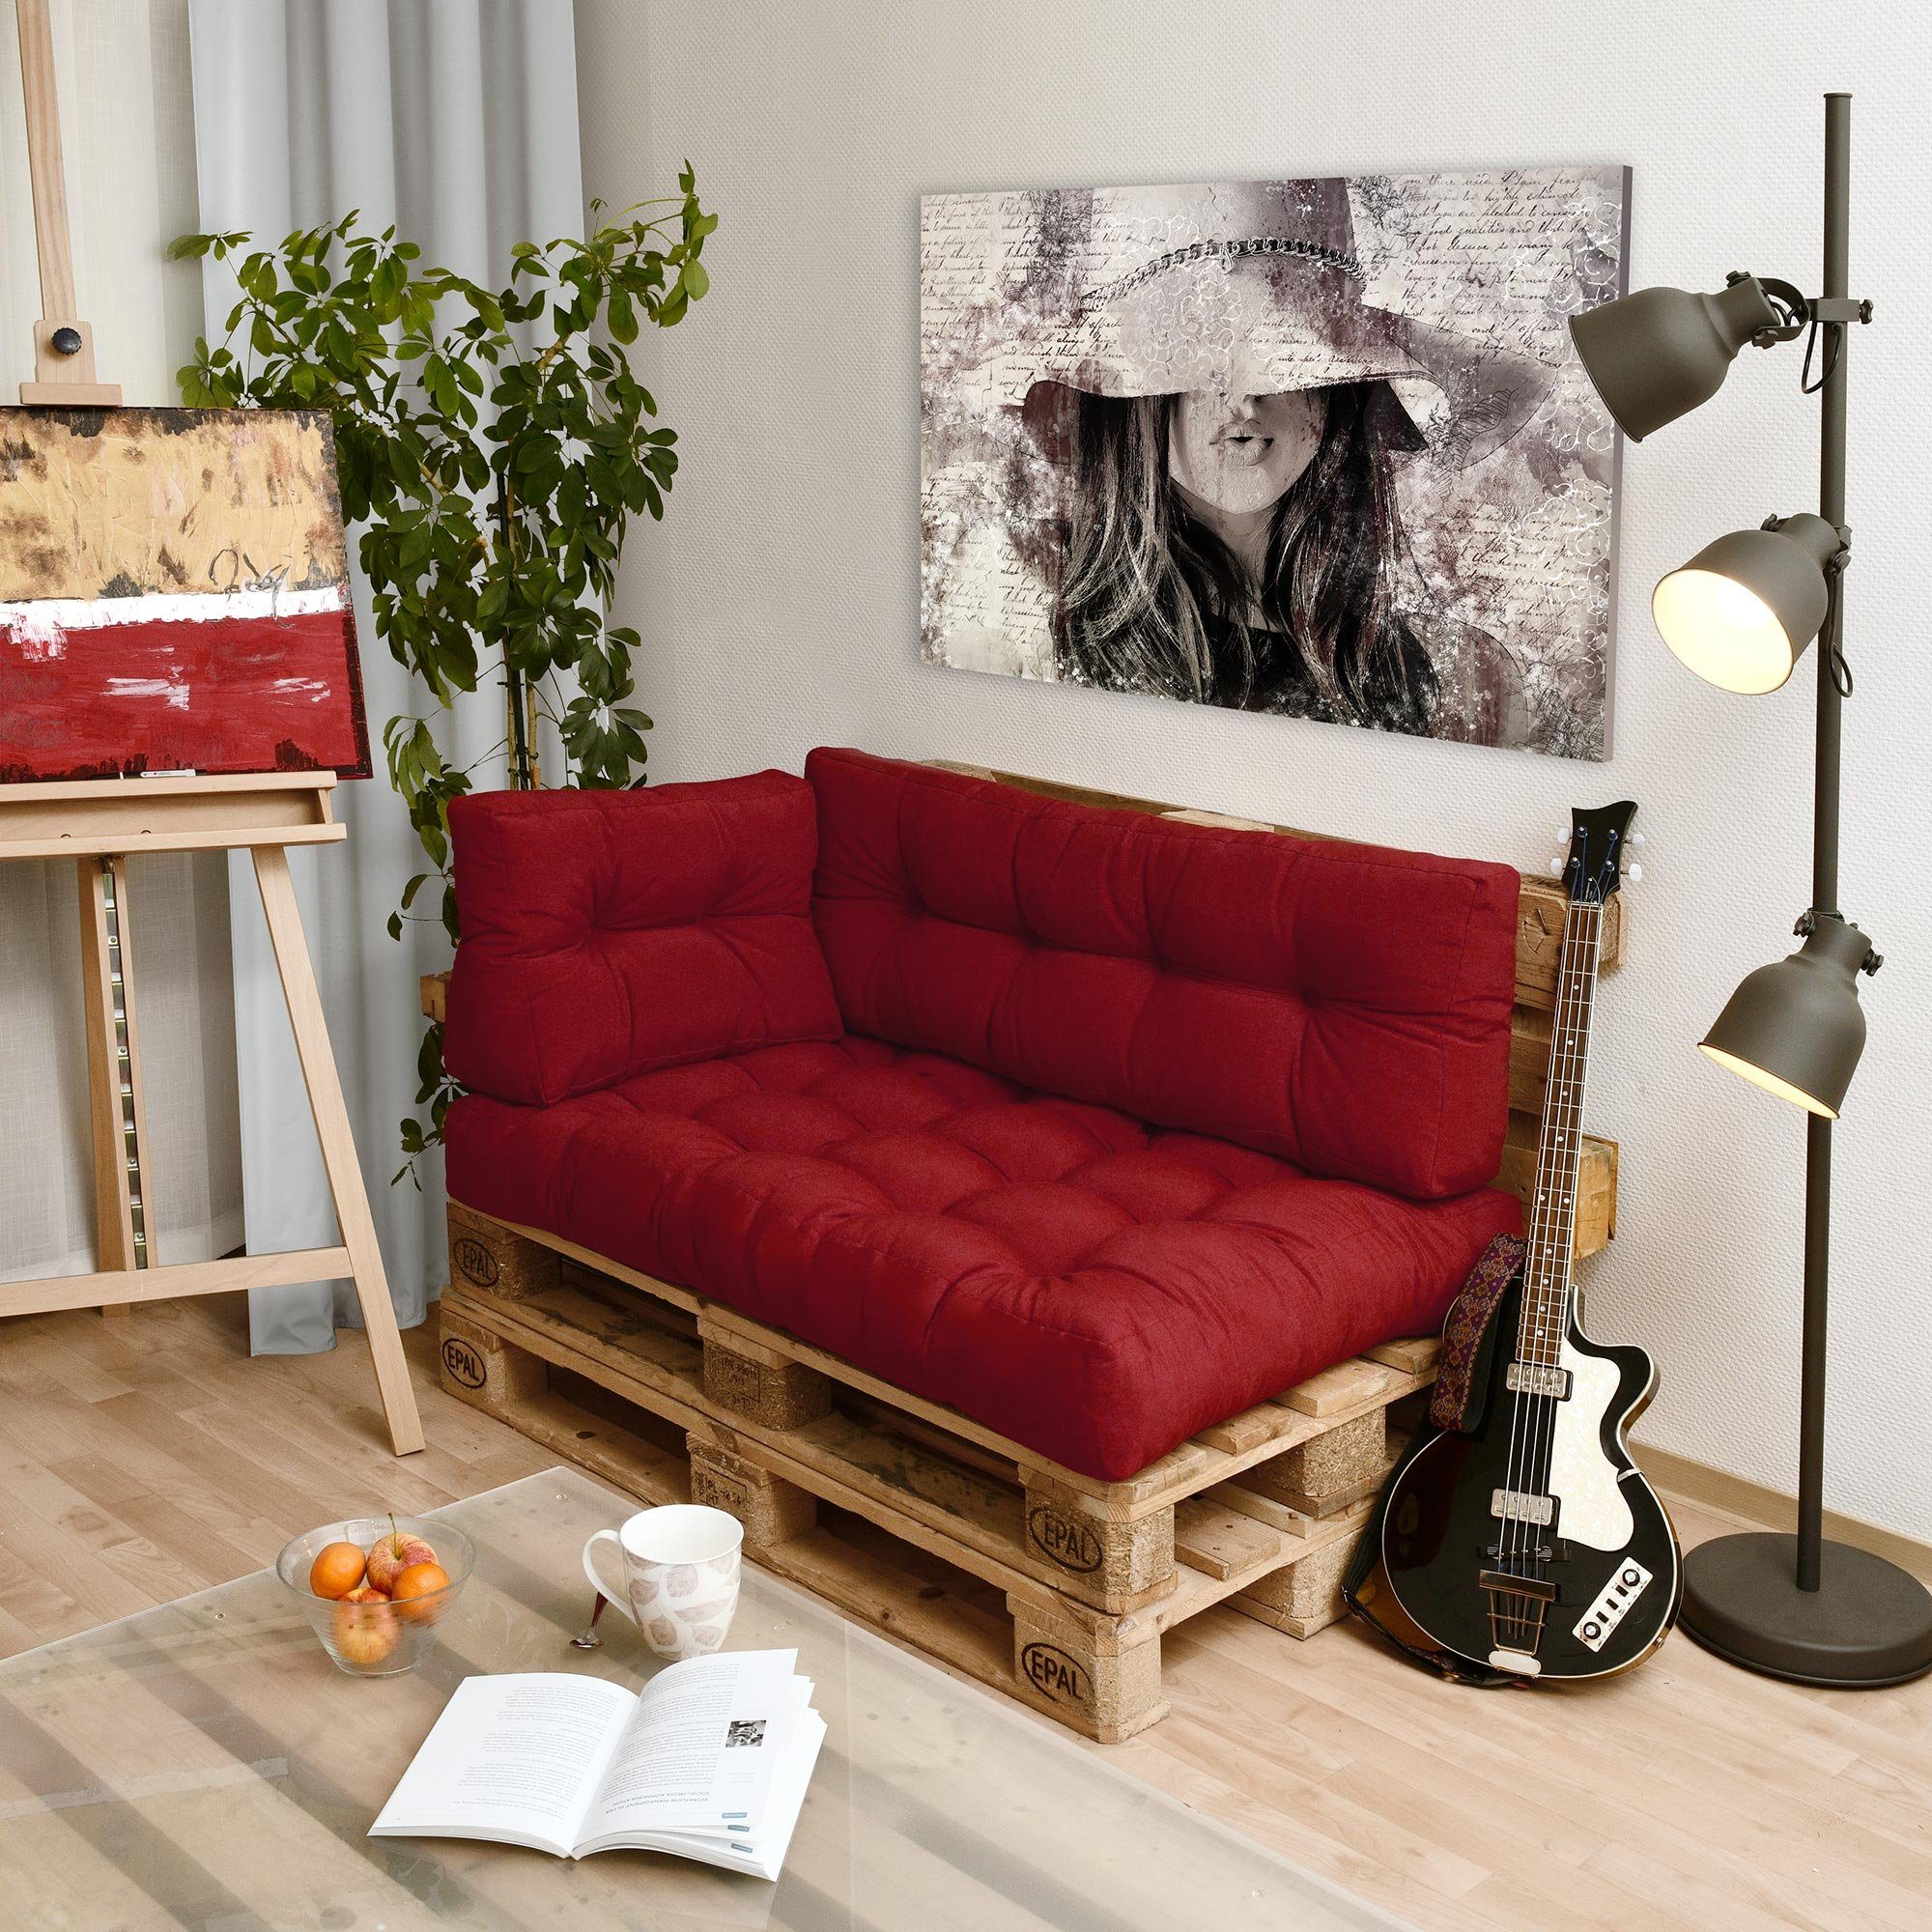 Sitzkissen Rot Beautissu Style, Sitz Palettenkissen 120x80x15cm